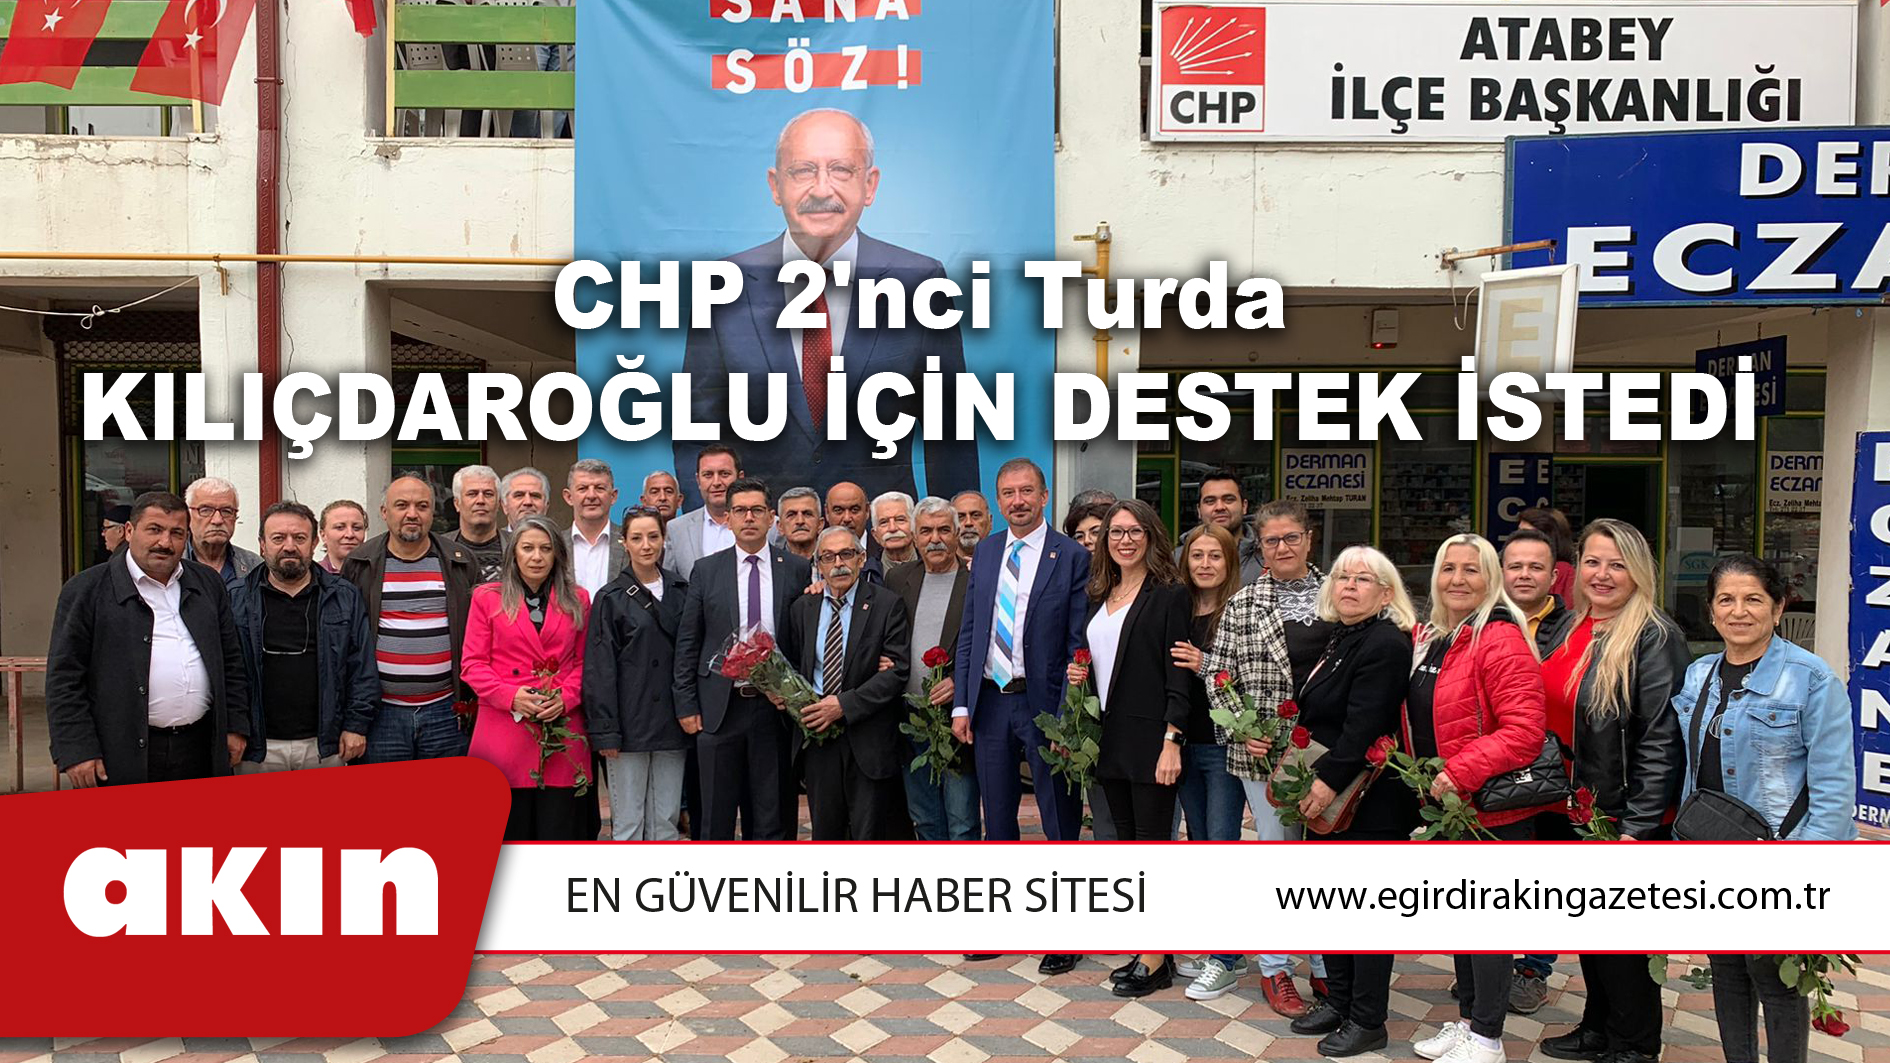 CHP 2'nci Turda Kılıçdaroğlu İçin Destek İstedi 